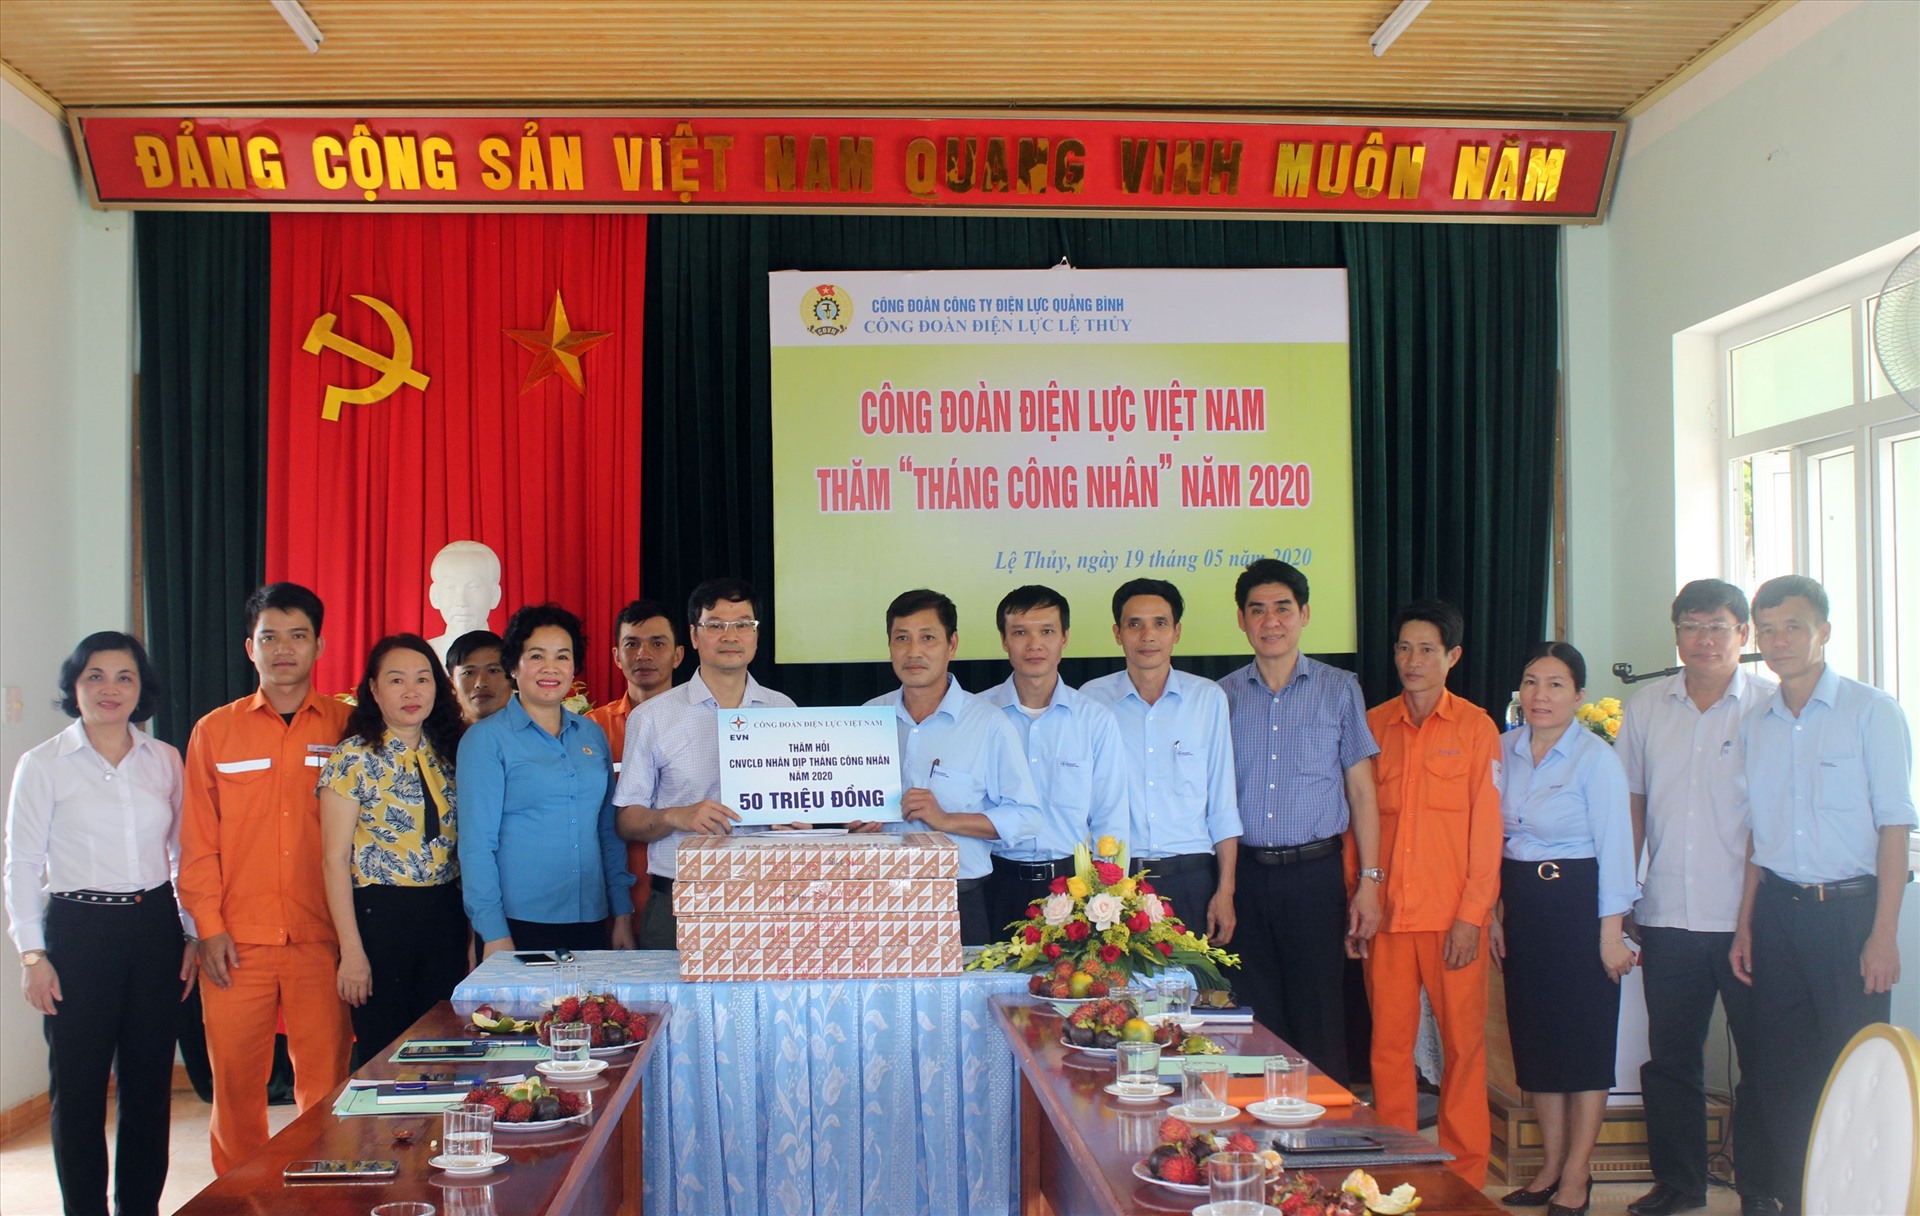 Công đoàn Điện lực Việt Nam tặng quà và trao số tiền 50 triệu đồng thăm hỏi CBCNV Điện lực Lệ Thủy nhân Tháng Công nhân năm 2020. Ảnh: Hương Nguyên